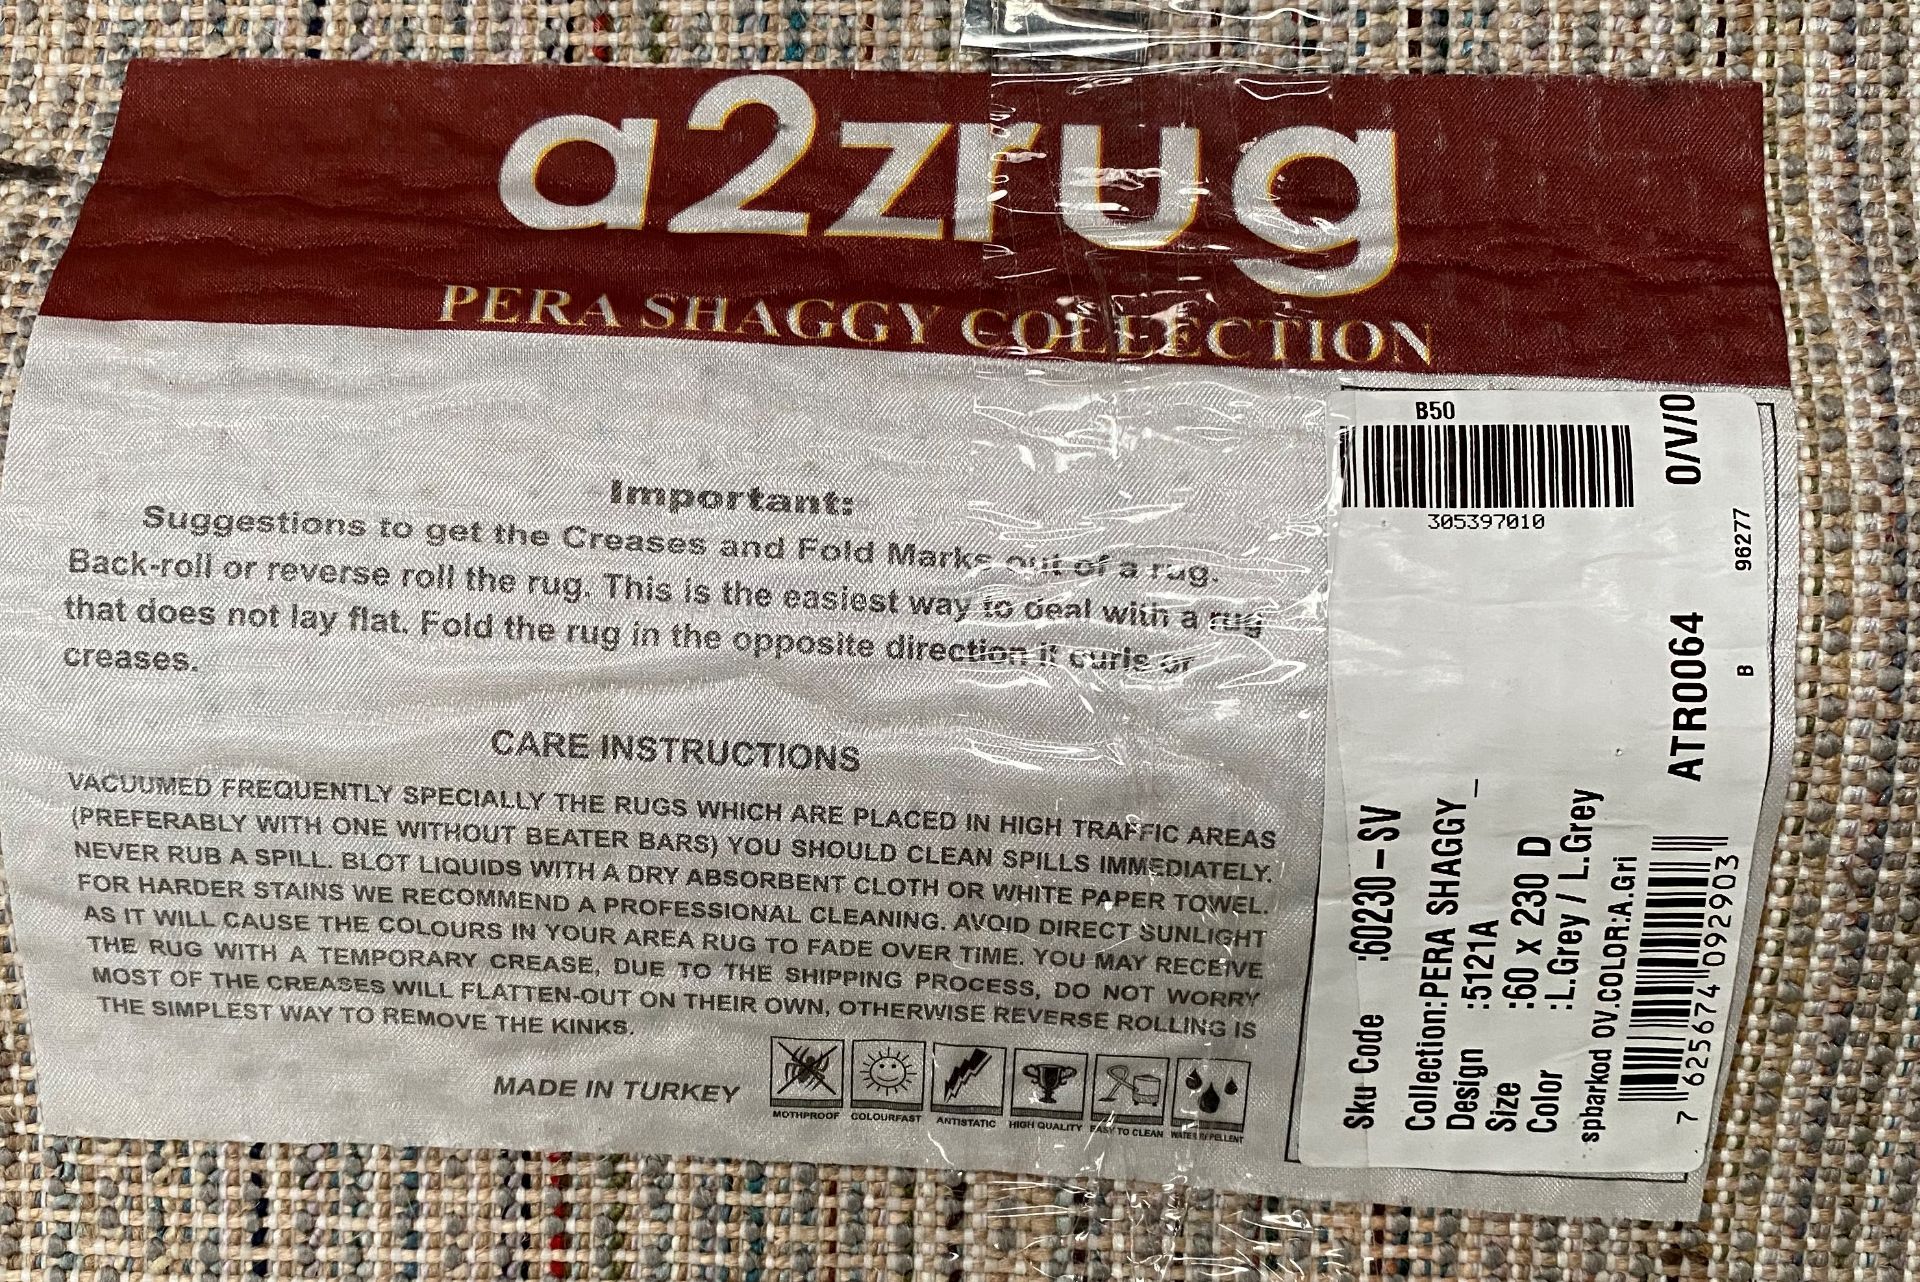 A A2zrug Pera Shaggy Collection grey rug - 60cm x 230cm - Image 2 of 2